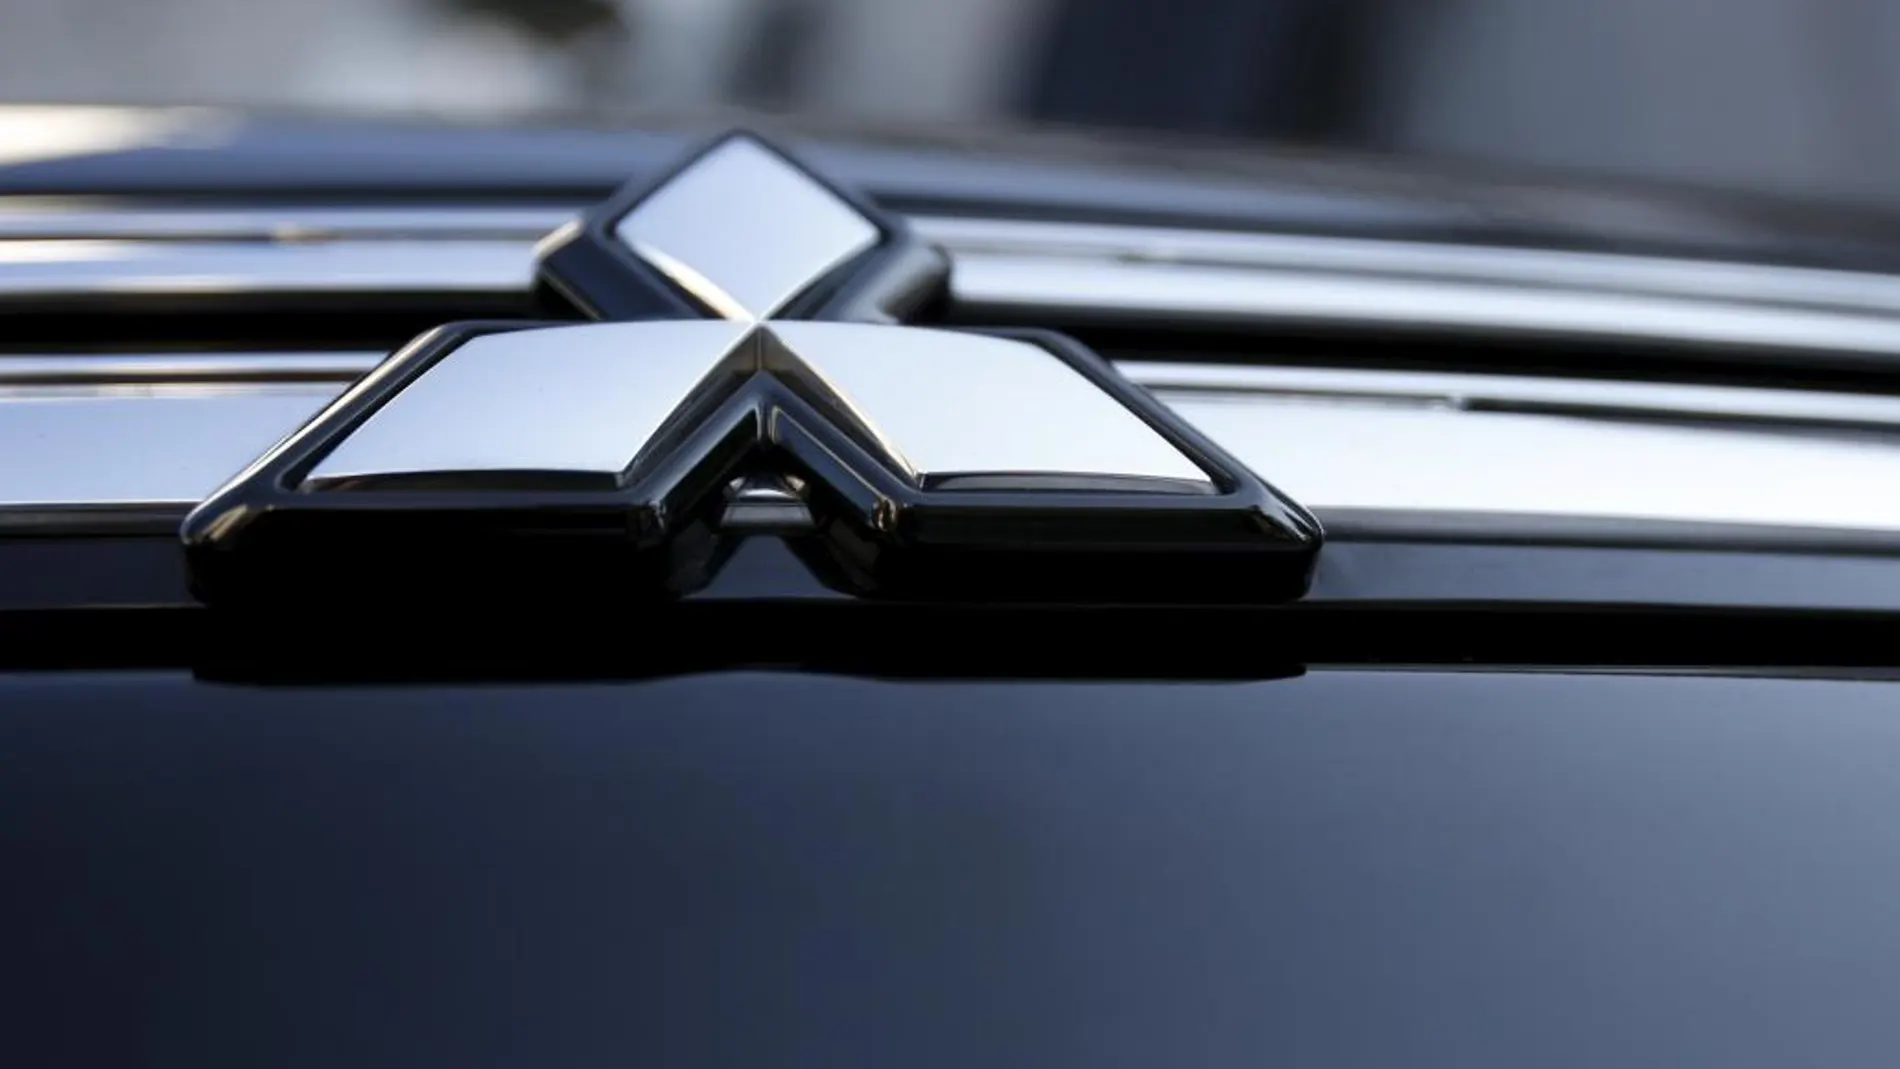 Los 6 modelos que Mitsubishi ha comercializado en España cumplen con la homologación europea